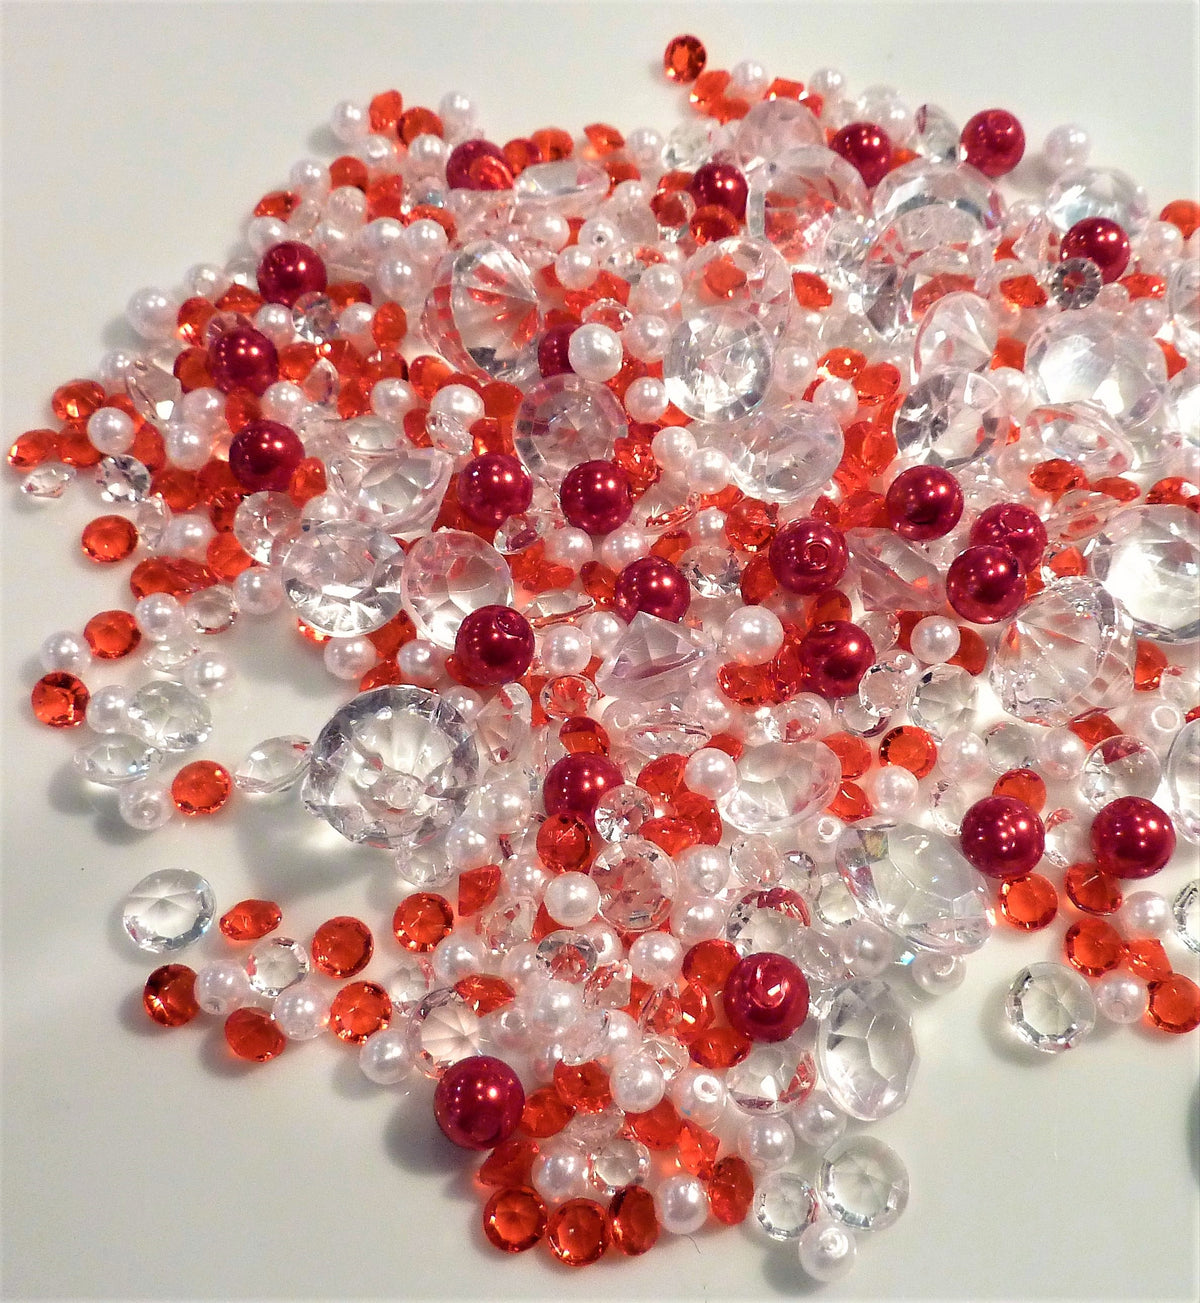 מגוון יהלומים עם פיזור שולחן נוצץ פנינים תואמות - בחר: אדום ולבן, שחור ולבן ולבן